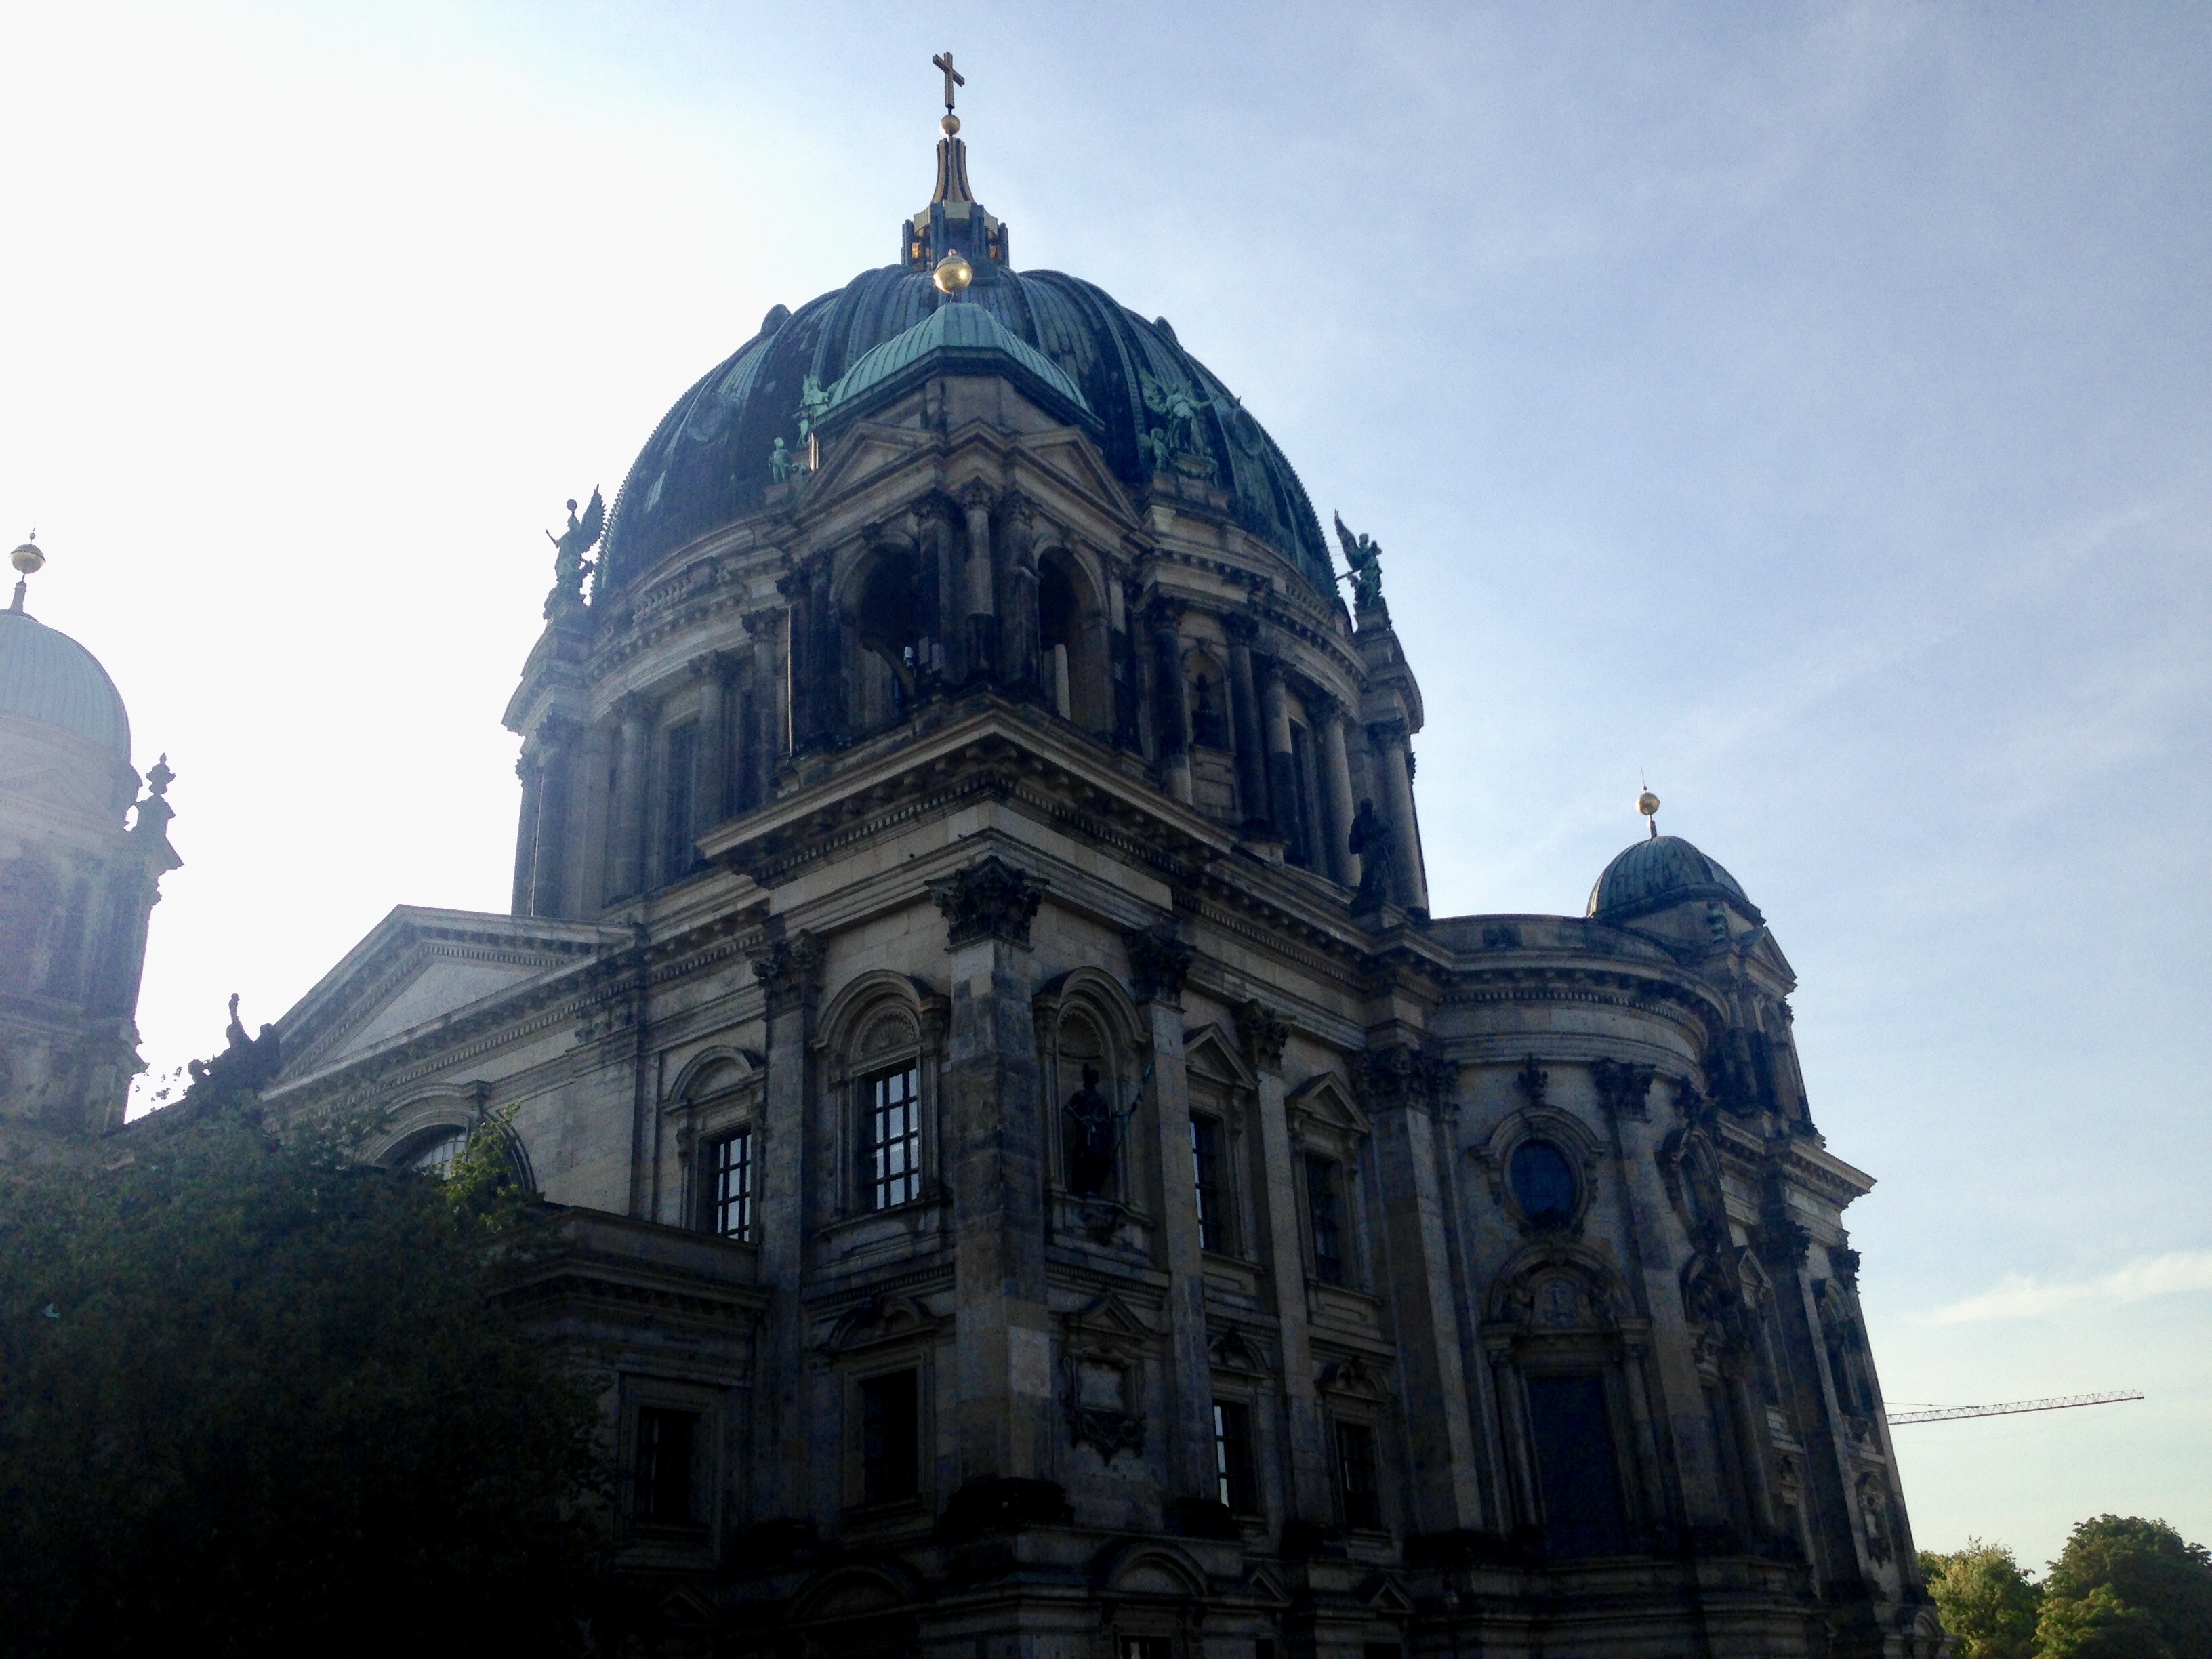 Catedrala din Berlin, una dintre cele mai frumoase pe care le-am văzut